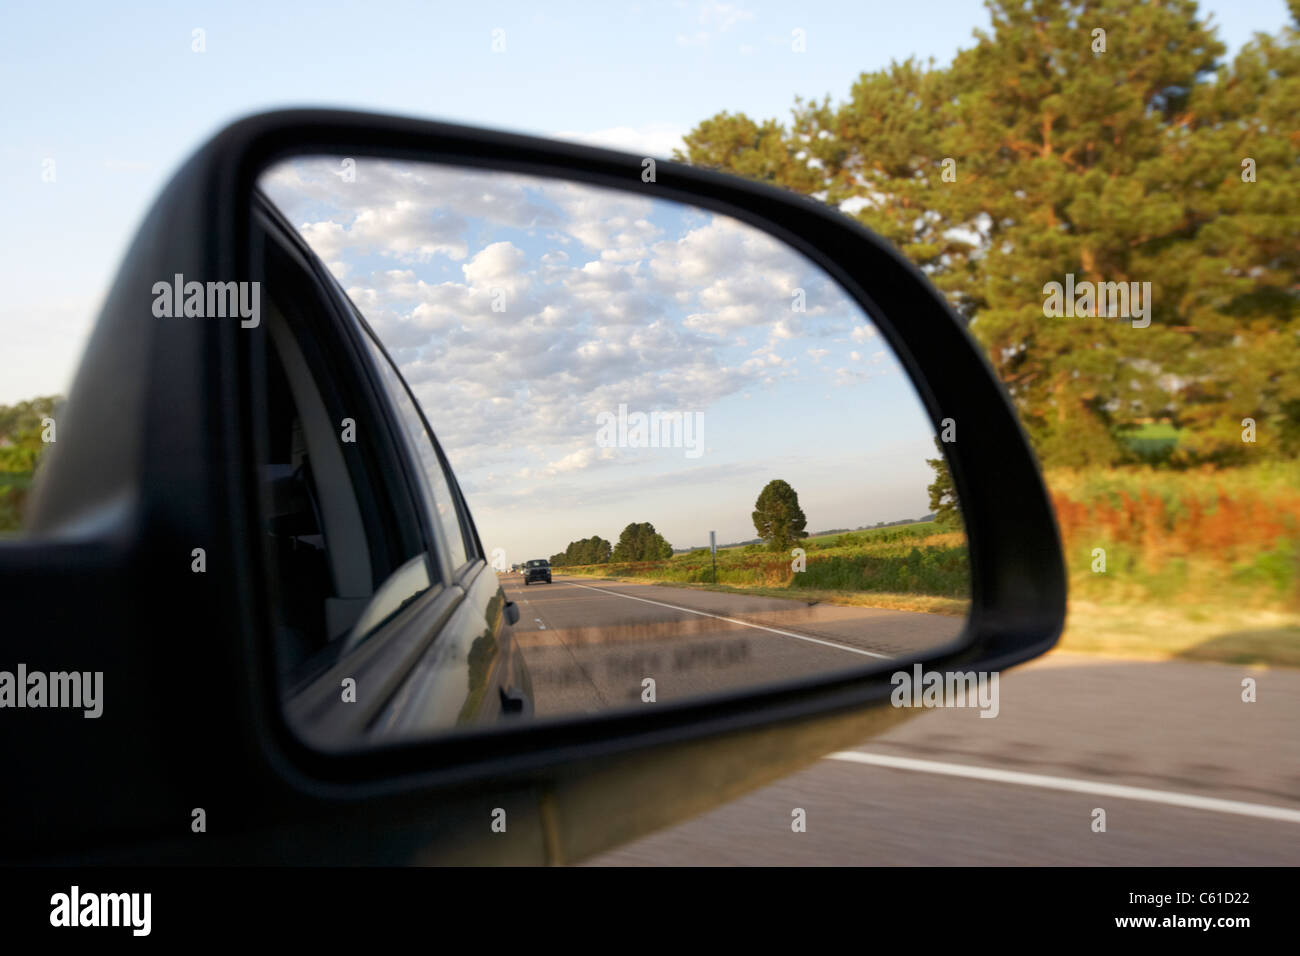 Kohlefaser Auto Rückansicht Tür Flügel Spiegel Seitenspiegel